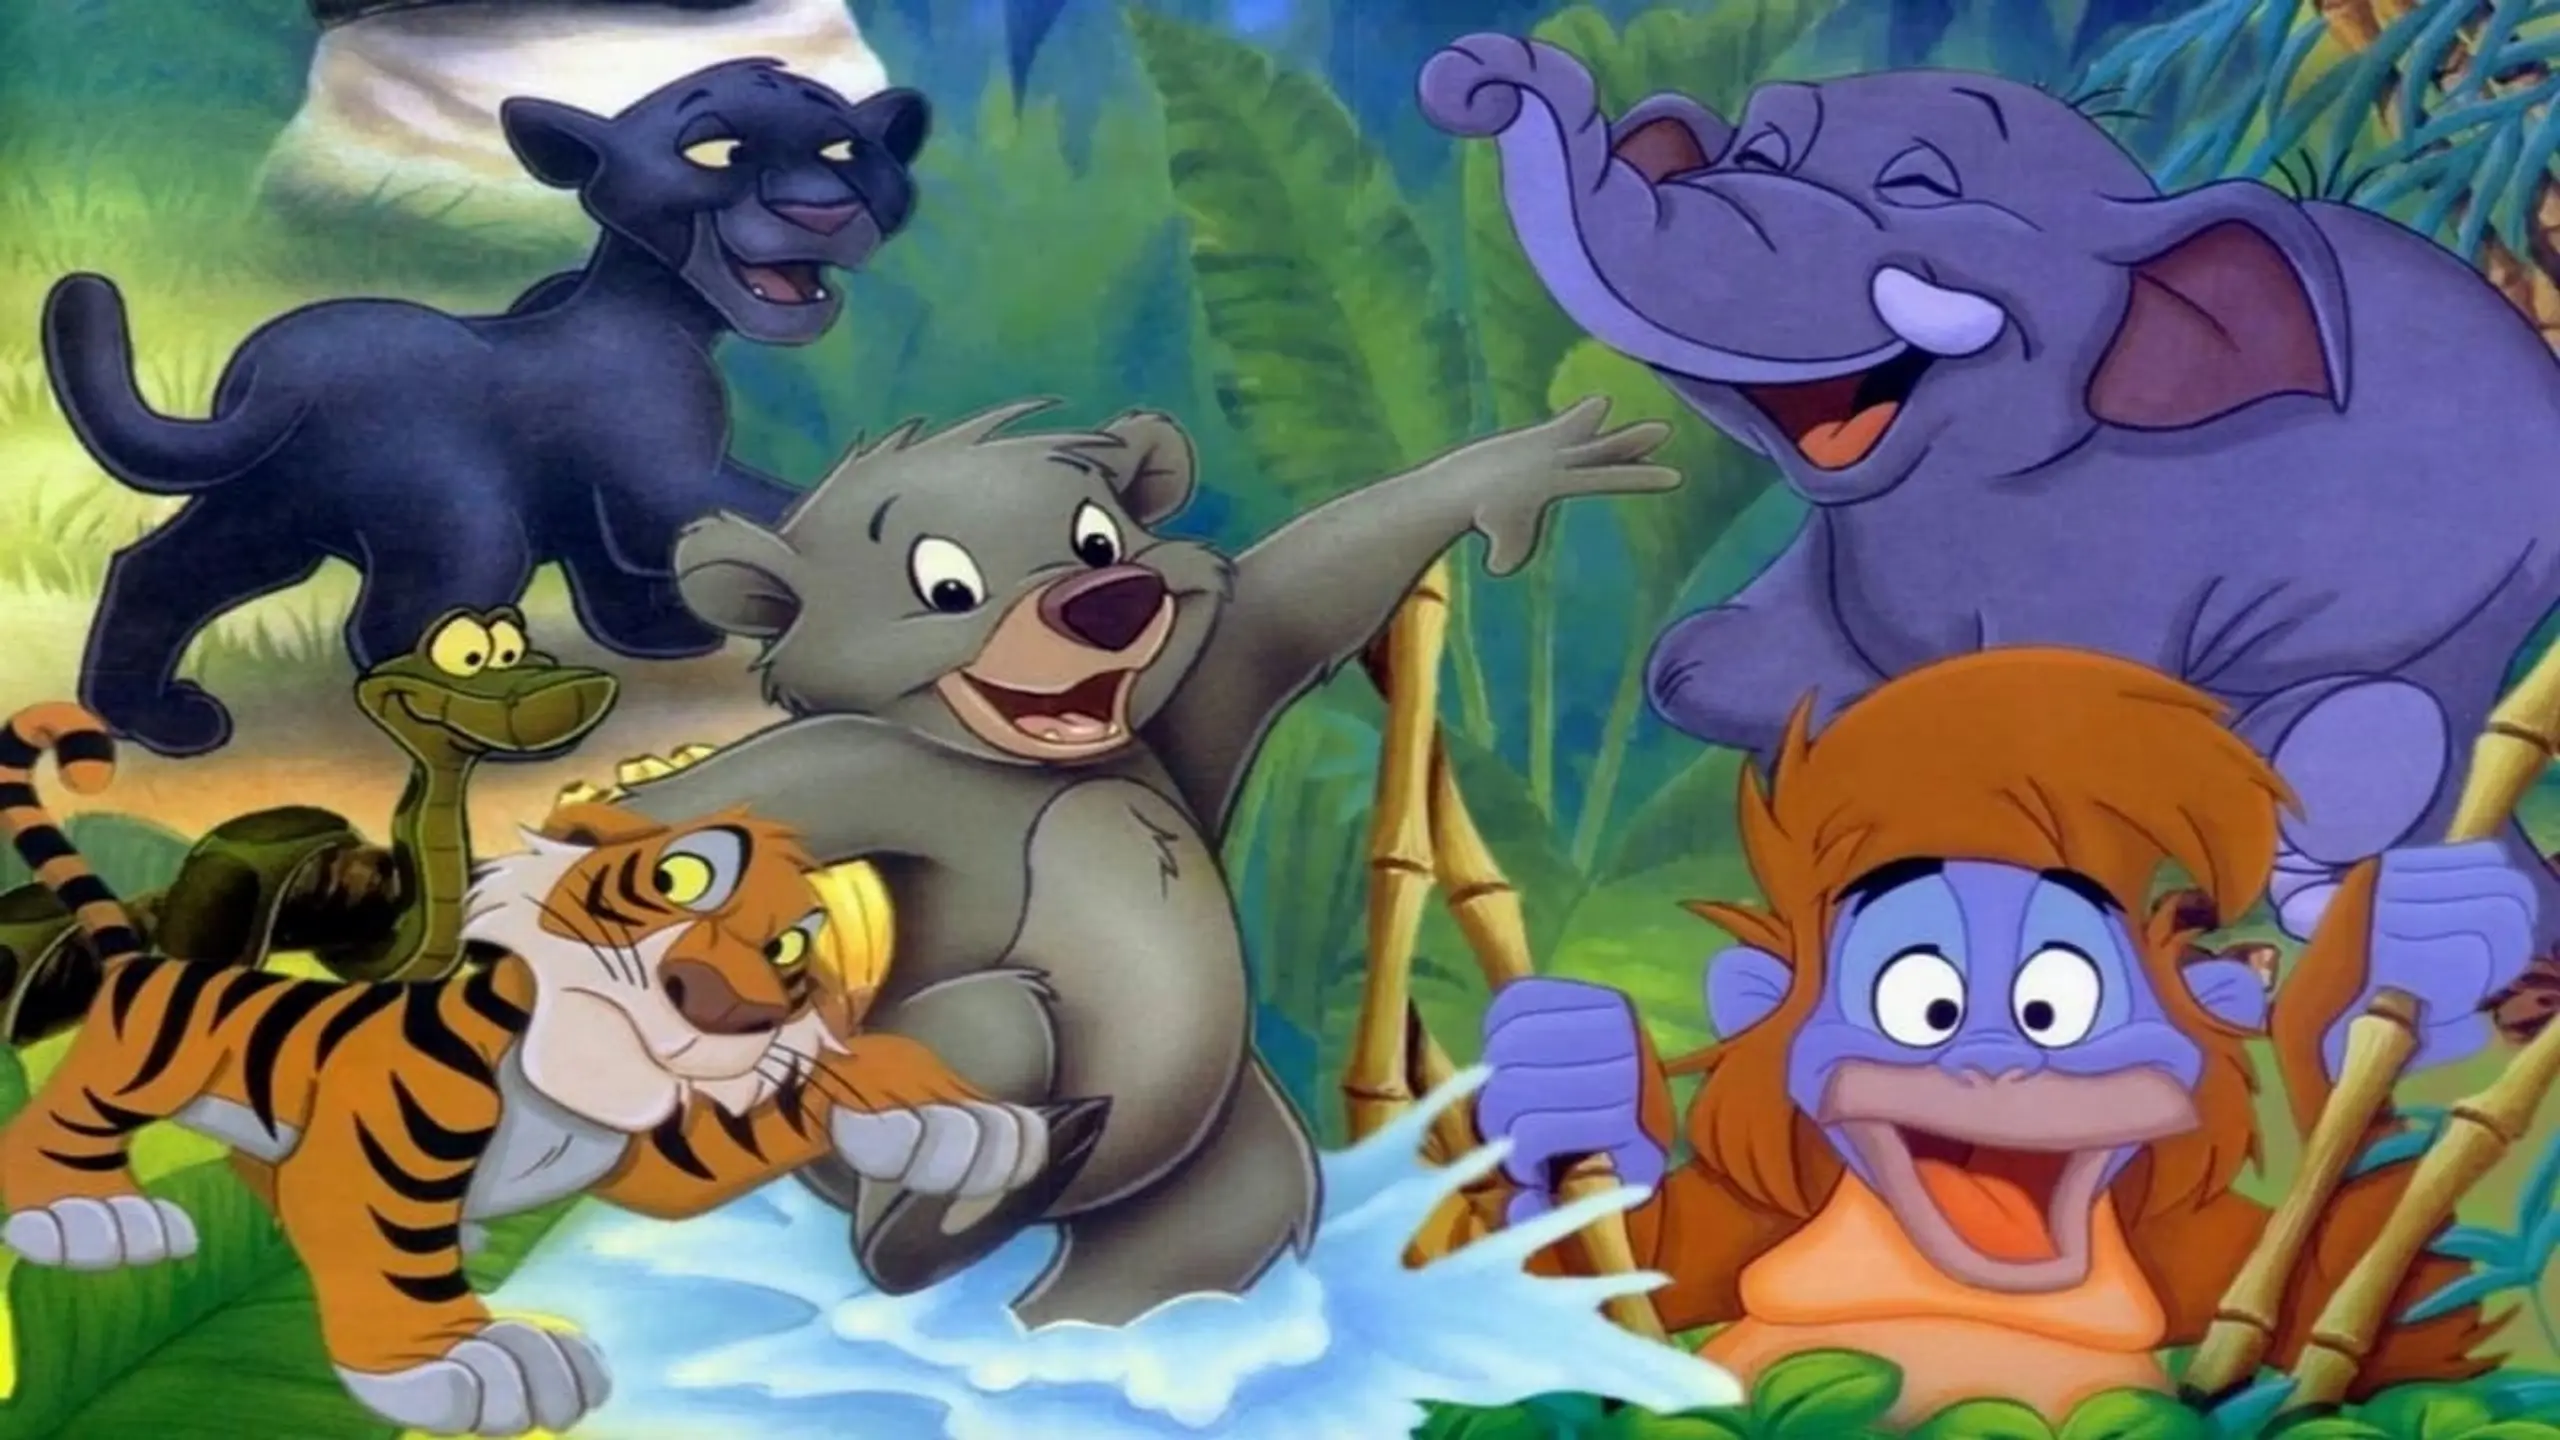 Disneys Dschungelbuch-Kids